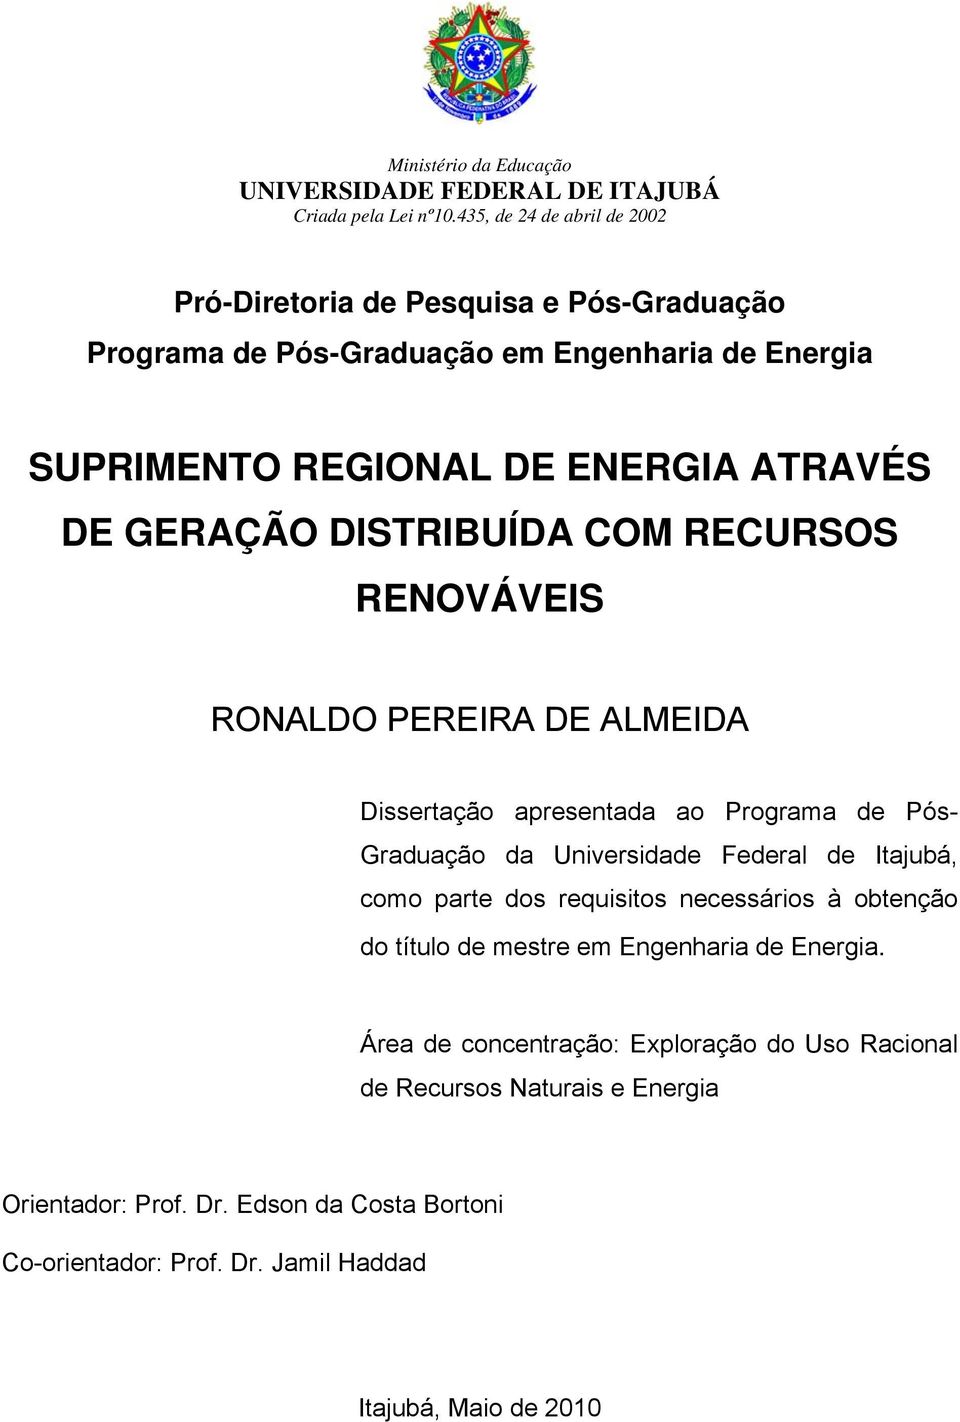 GERAÇÃO DISTRIBUÍDA COM RECURSOS RENOVÁVEIS RONALDO PEREIRA DE ALMEIDA Dissertação apresentada ao Programa de Pós- Graduação da Universidade Federal de Itajubá, como